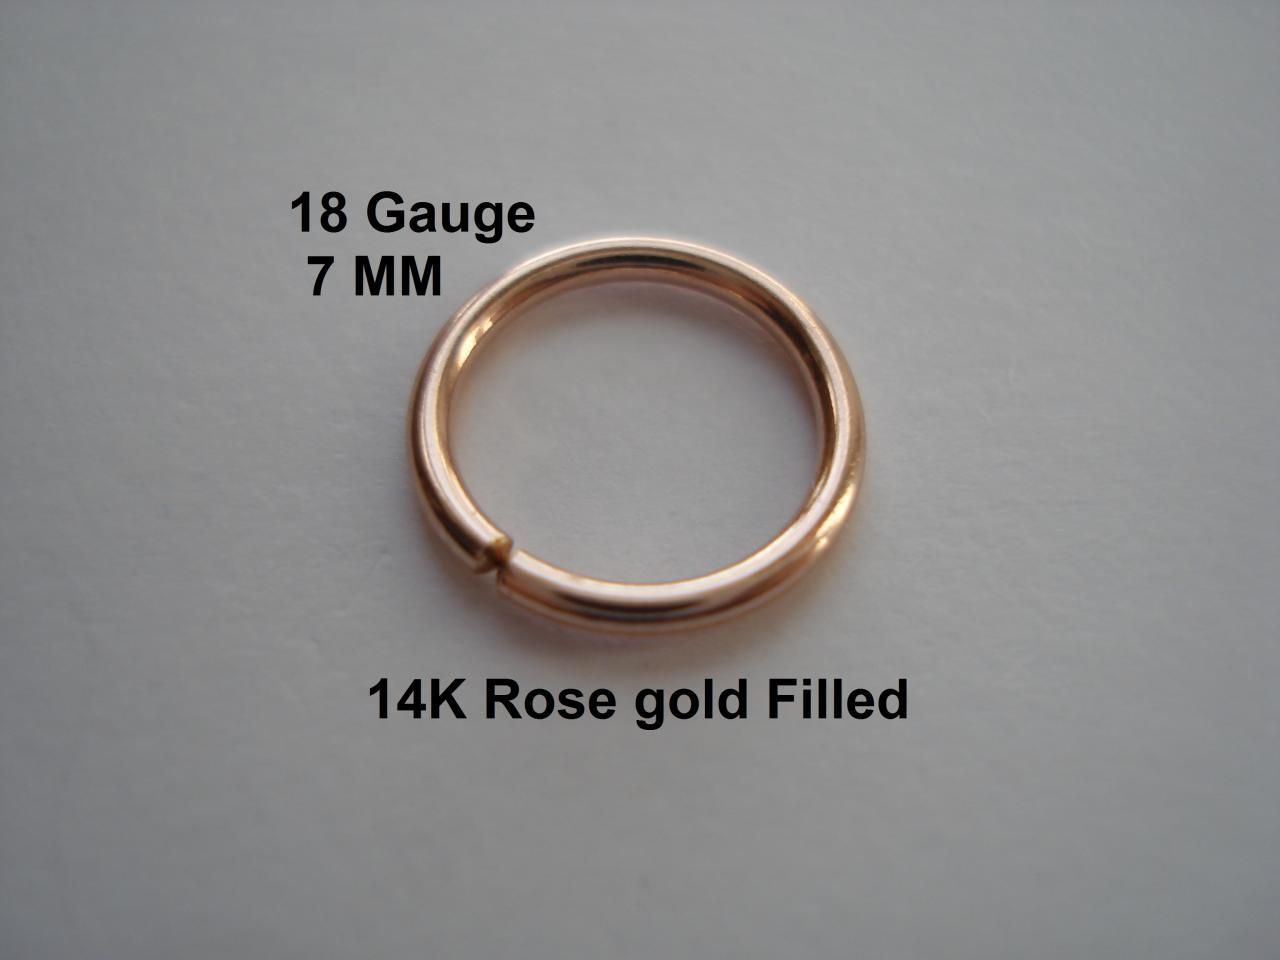 18g Gauge 14k Rose Gold Filled, Septum/nose Ring/hoop Helix/earring/tragus,7 Mm Inner Diameter